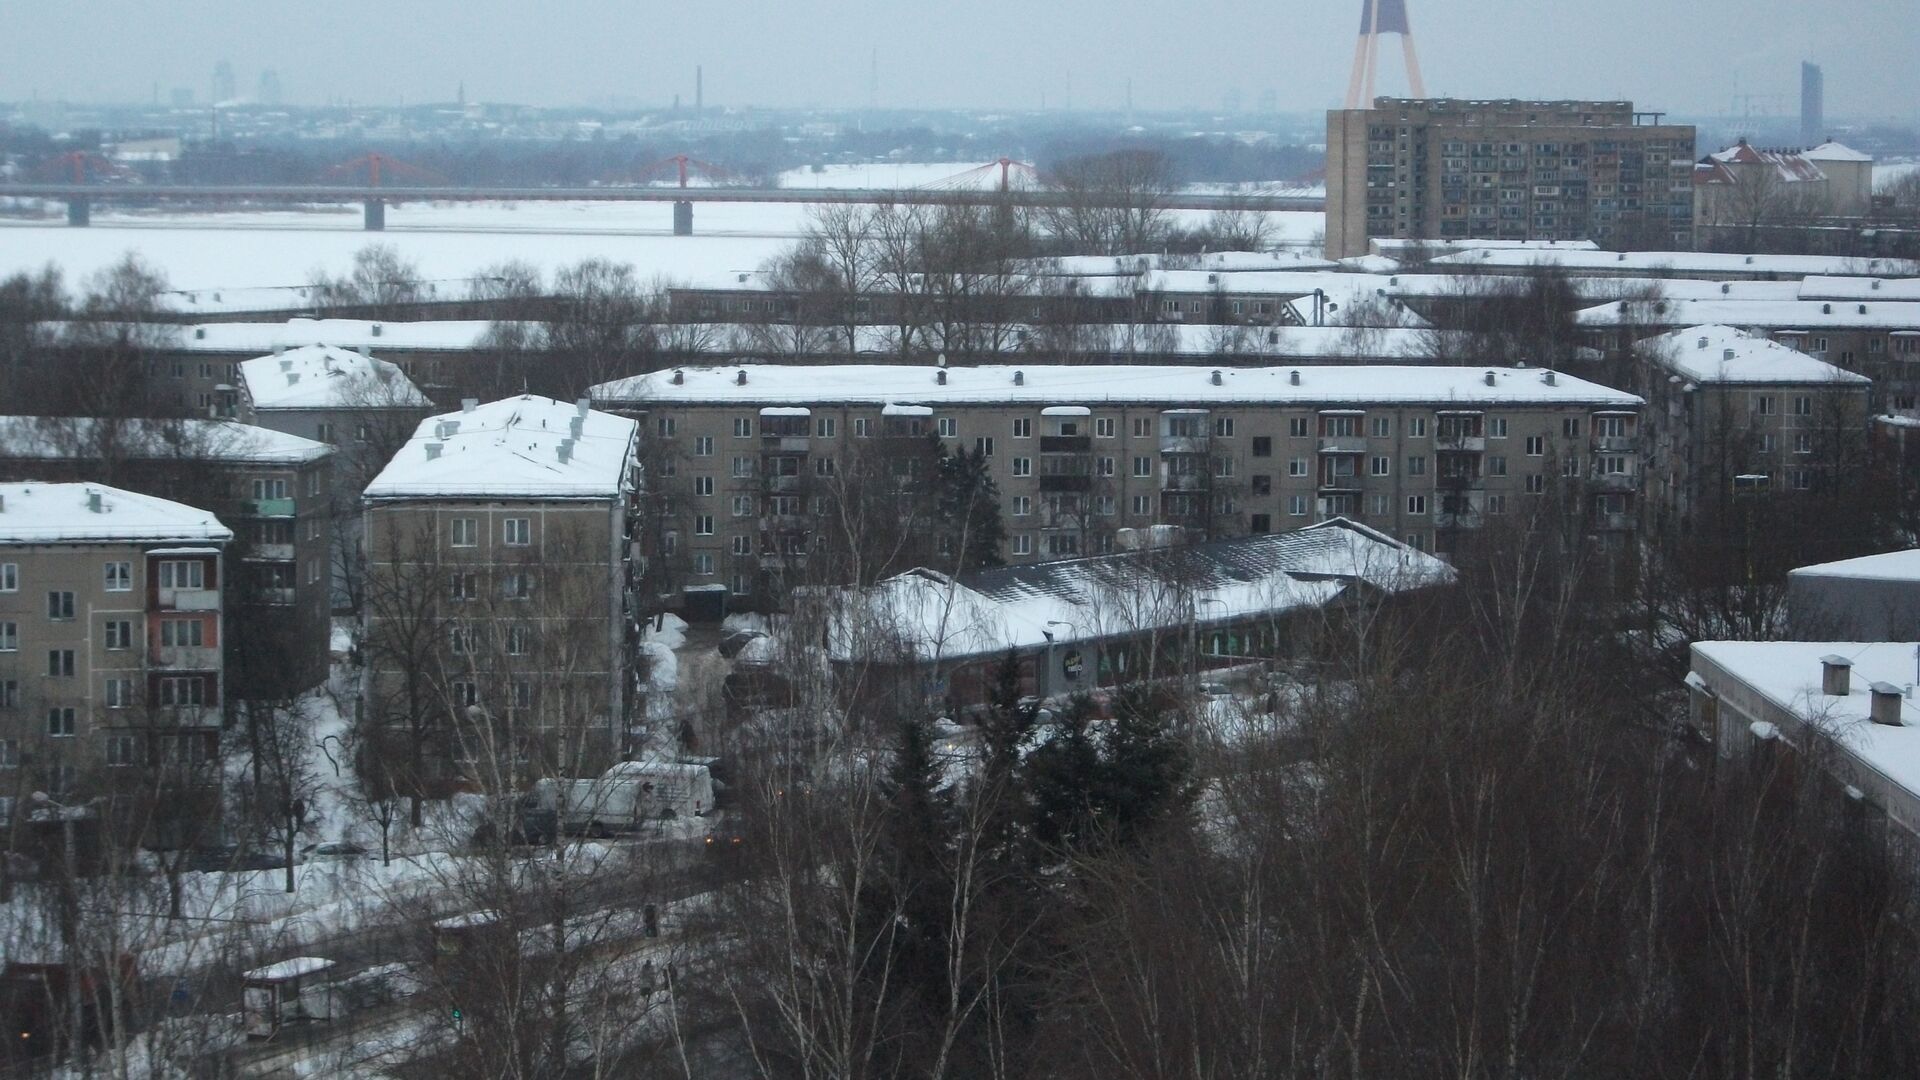 Кенгарагс - жилой район в южной части Риги - Sputnik Латвия, 1920, 28.12.2021